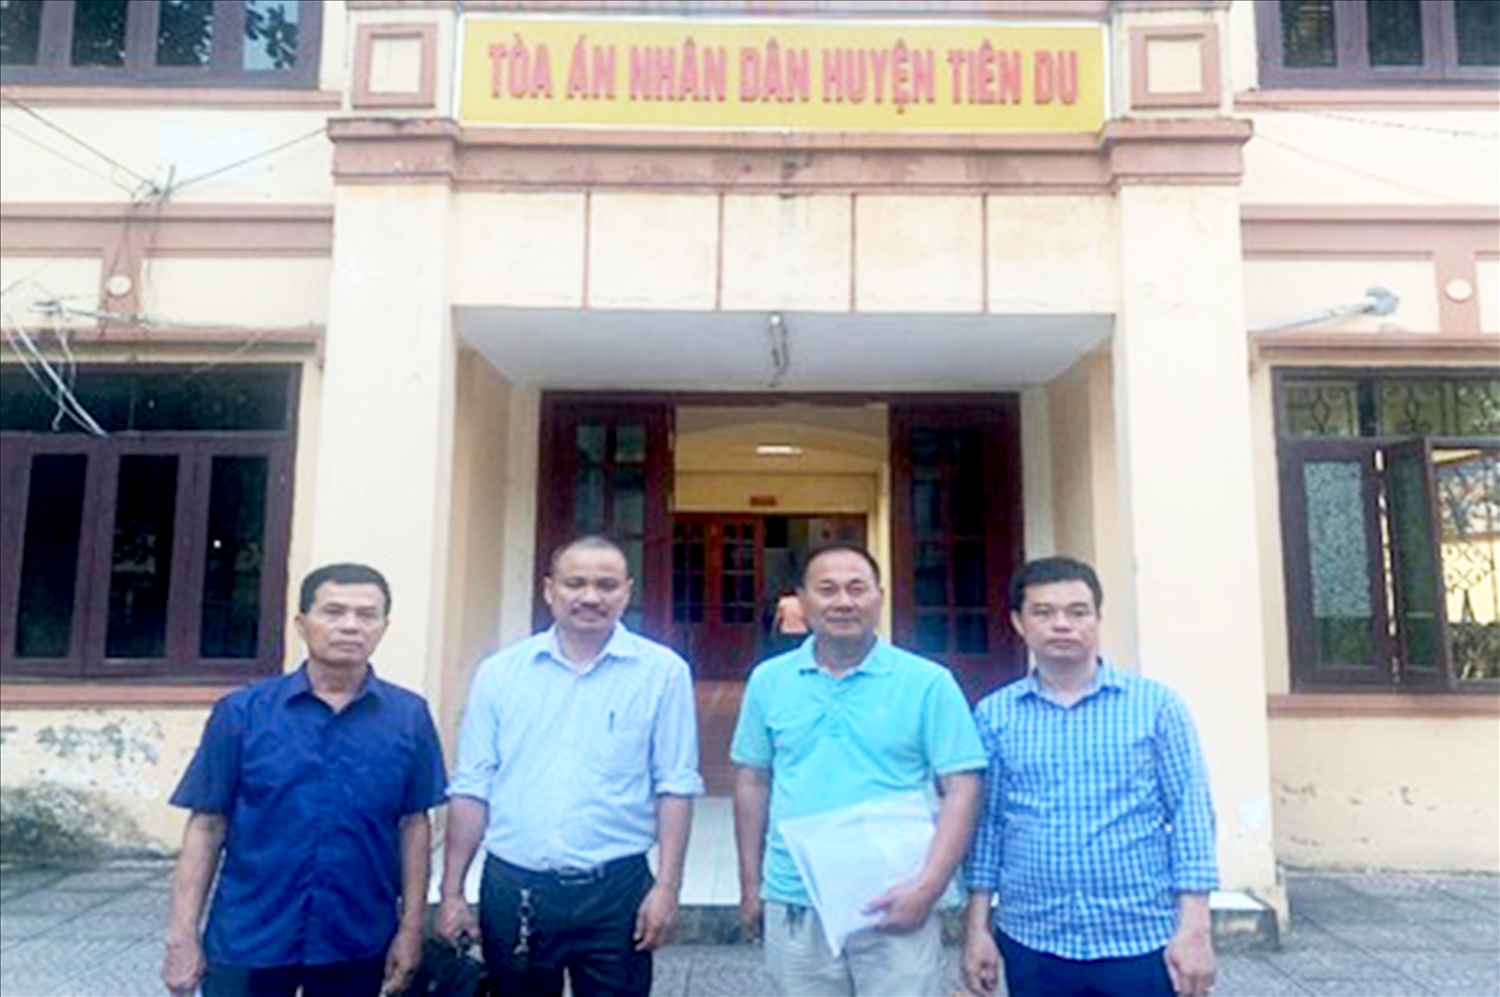 Bốn bị cáo sau phiên xử ngày 27/4 tại TAND huyện Tiên Du, tỉnh Bắc Ninh